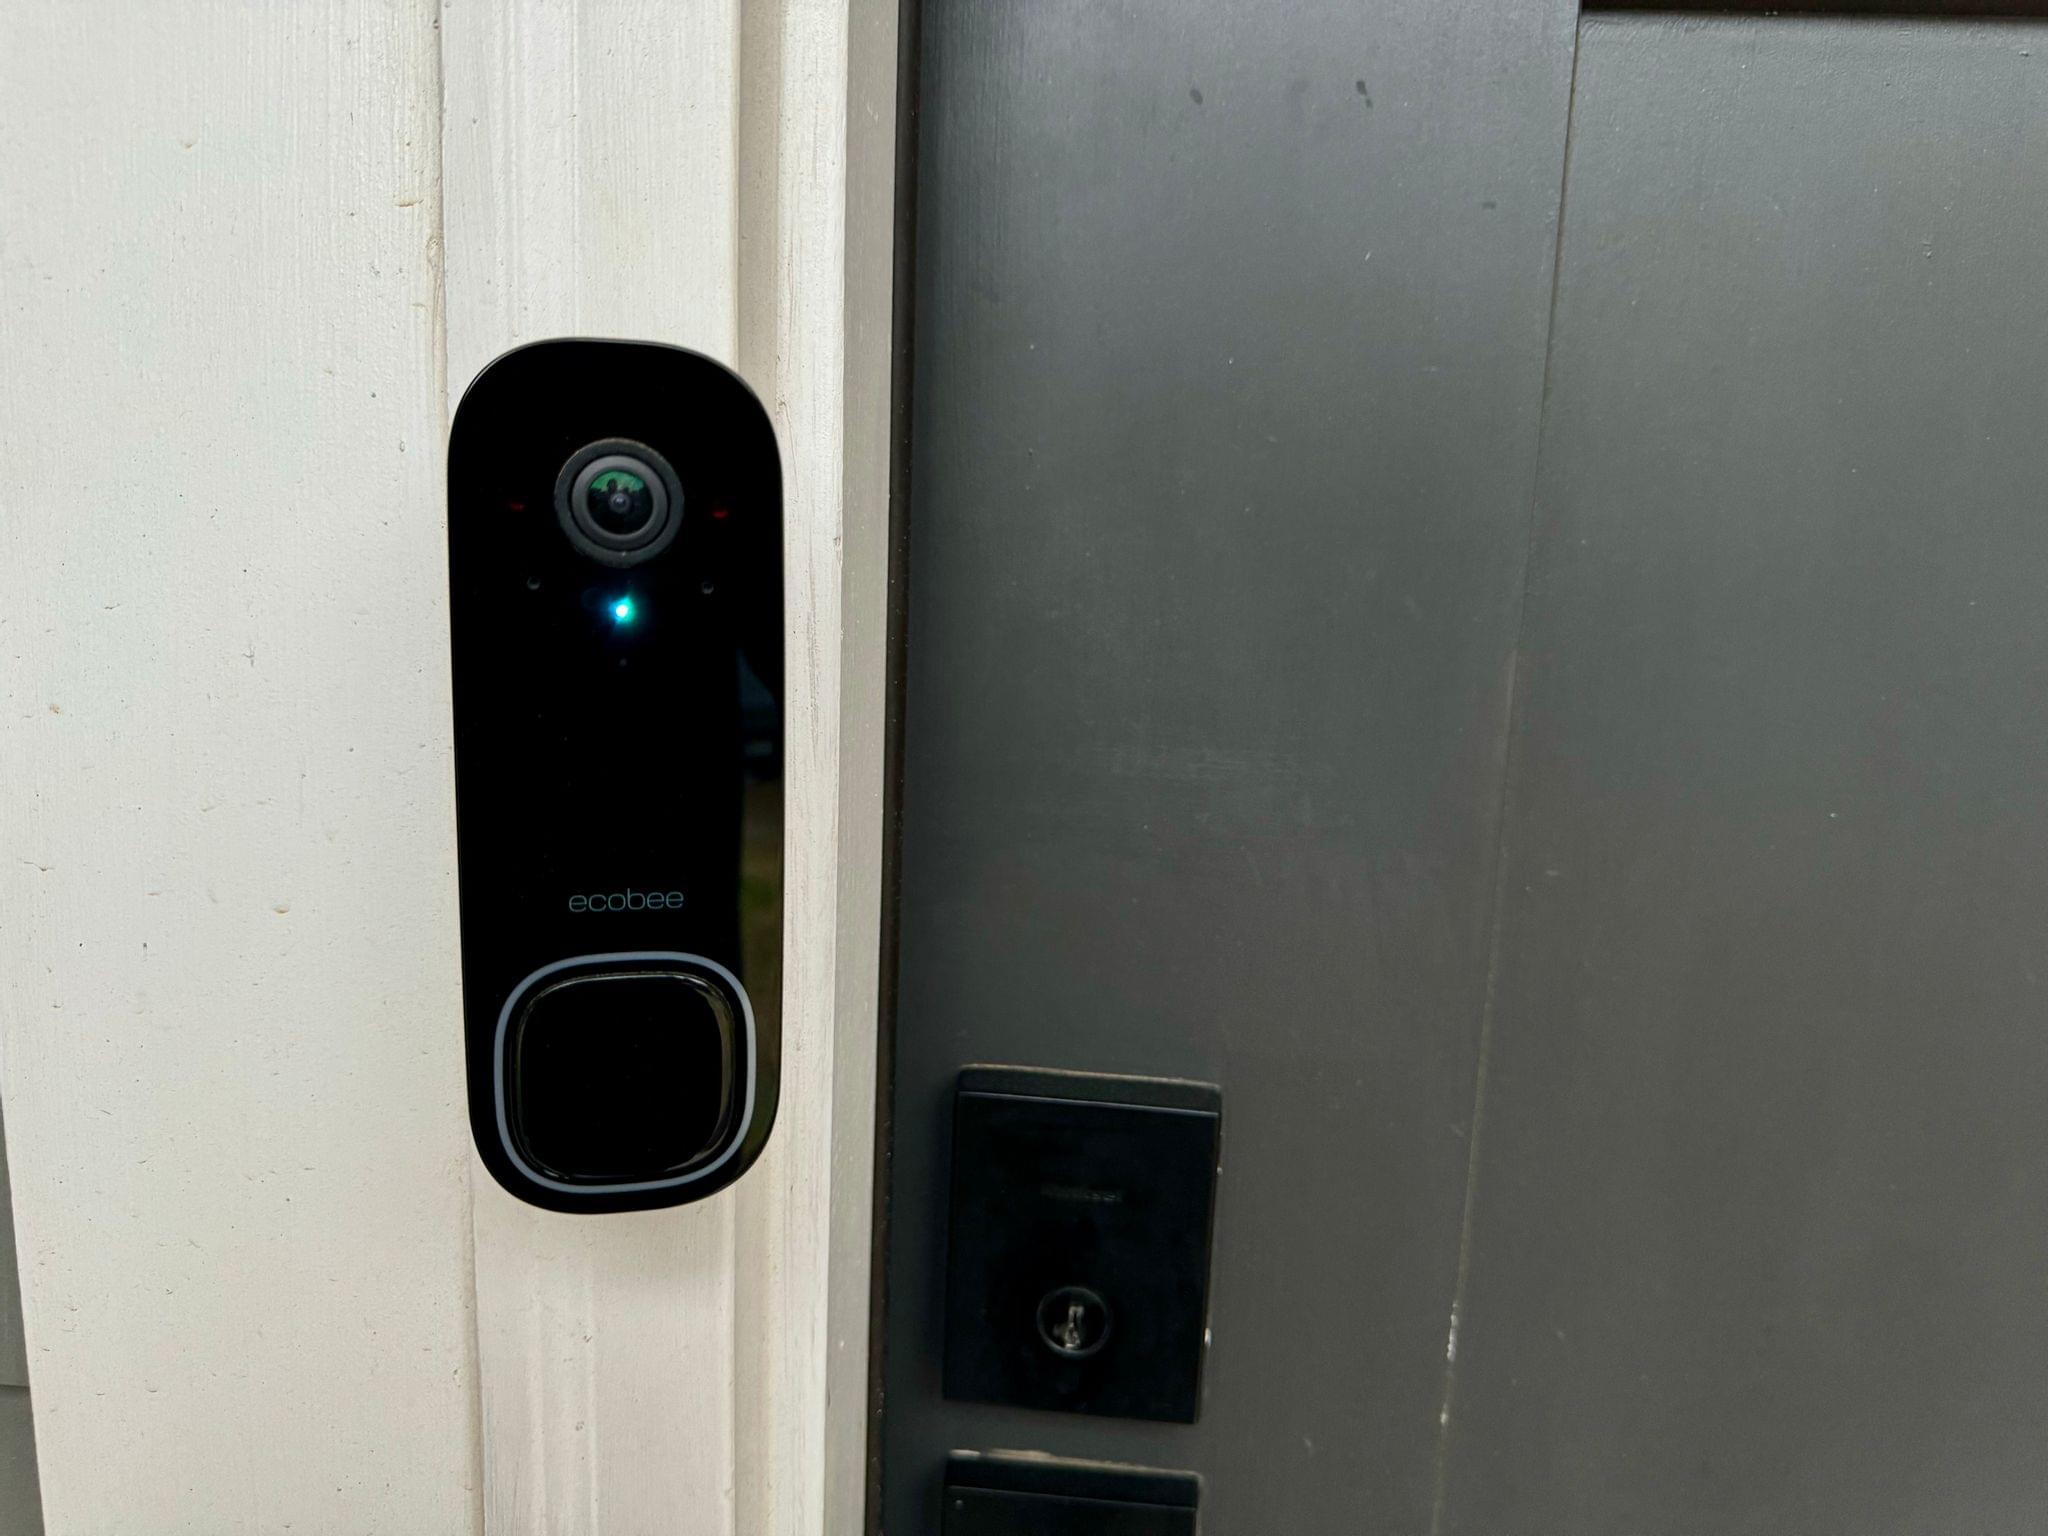 The ecobee Smart Video Doorbell.